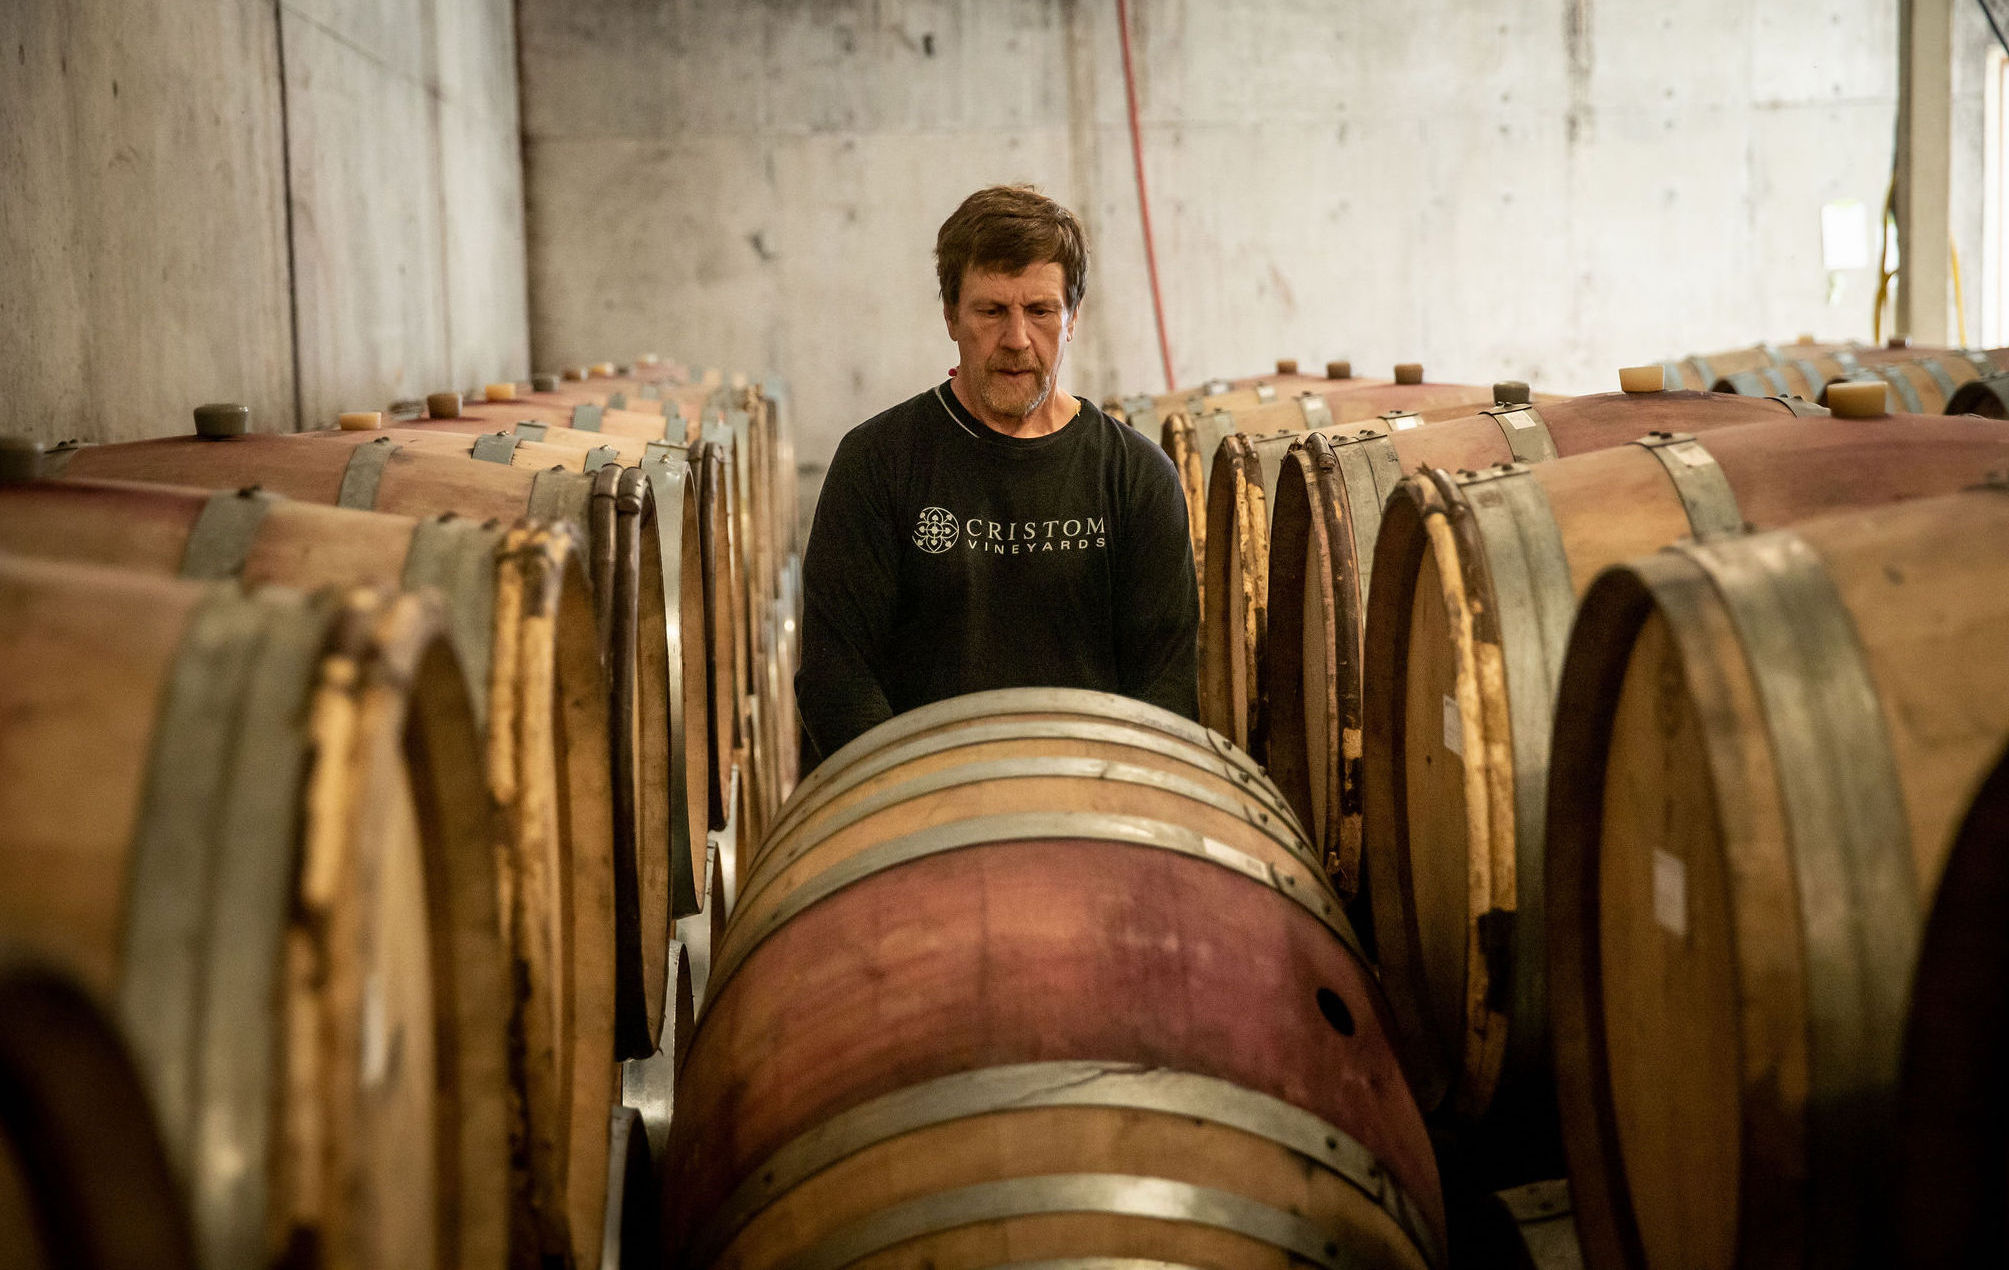 Andy Zorzi Assistant Winemaker, Cristom Vineyards